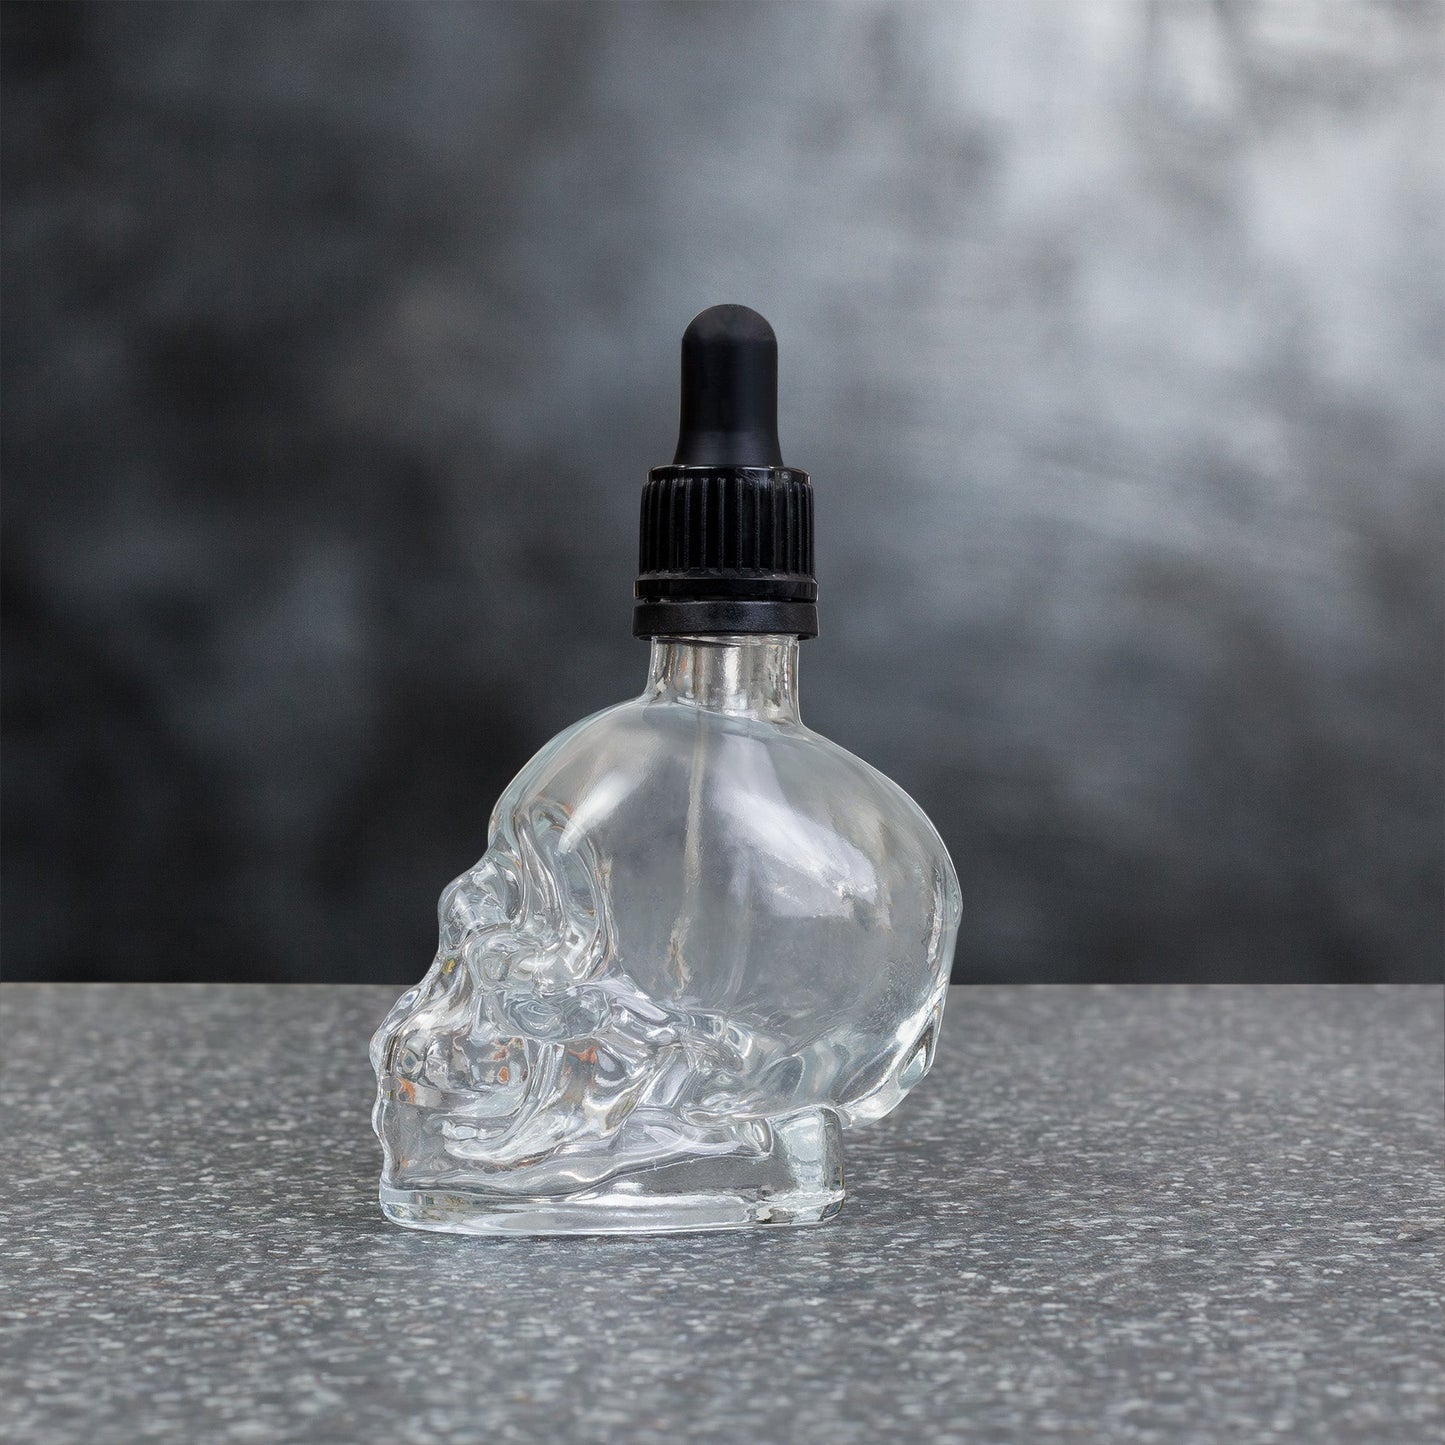 Skull Glass Dropper Bottles (2-Pack, 2oz, Clear) - sh1625tbscb0